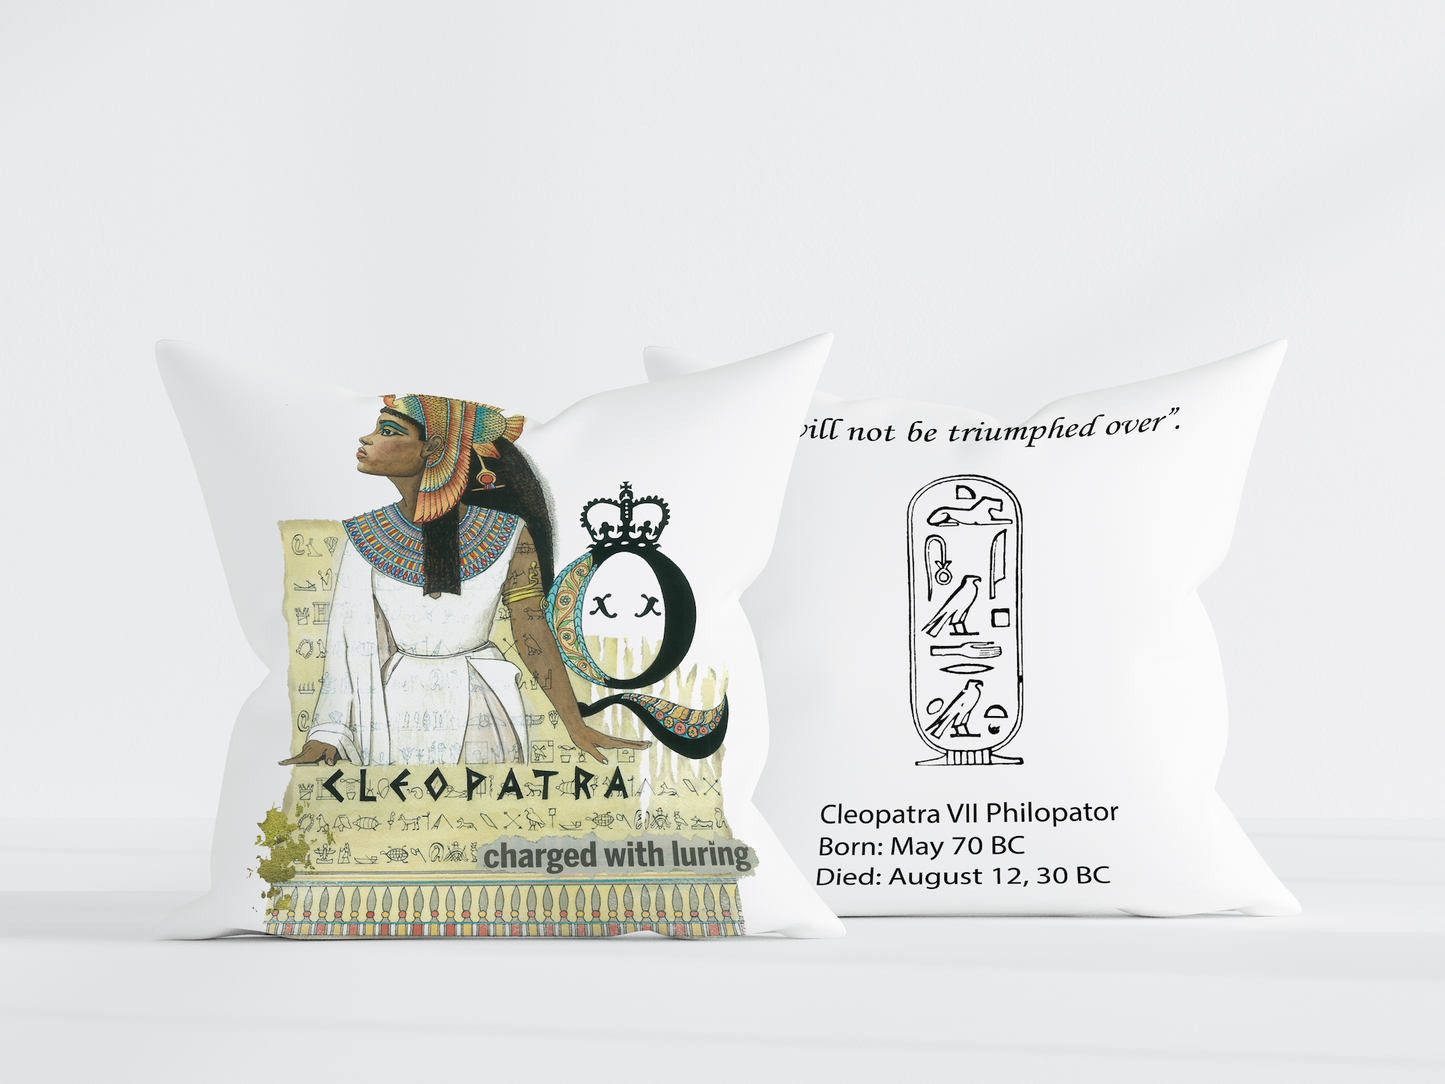 Cleopatra White Pillow 18x18